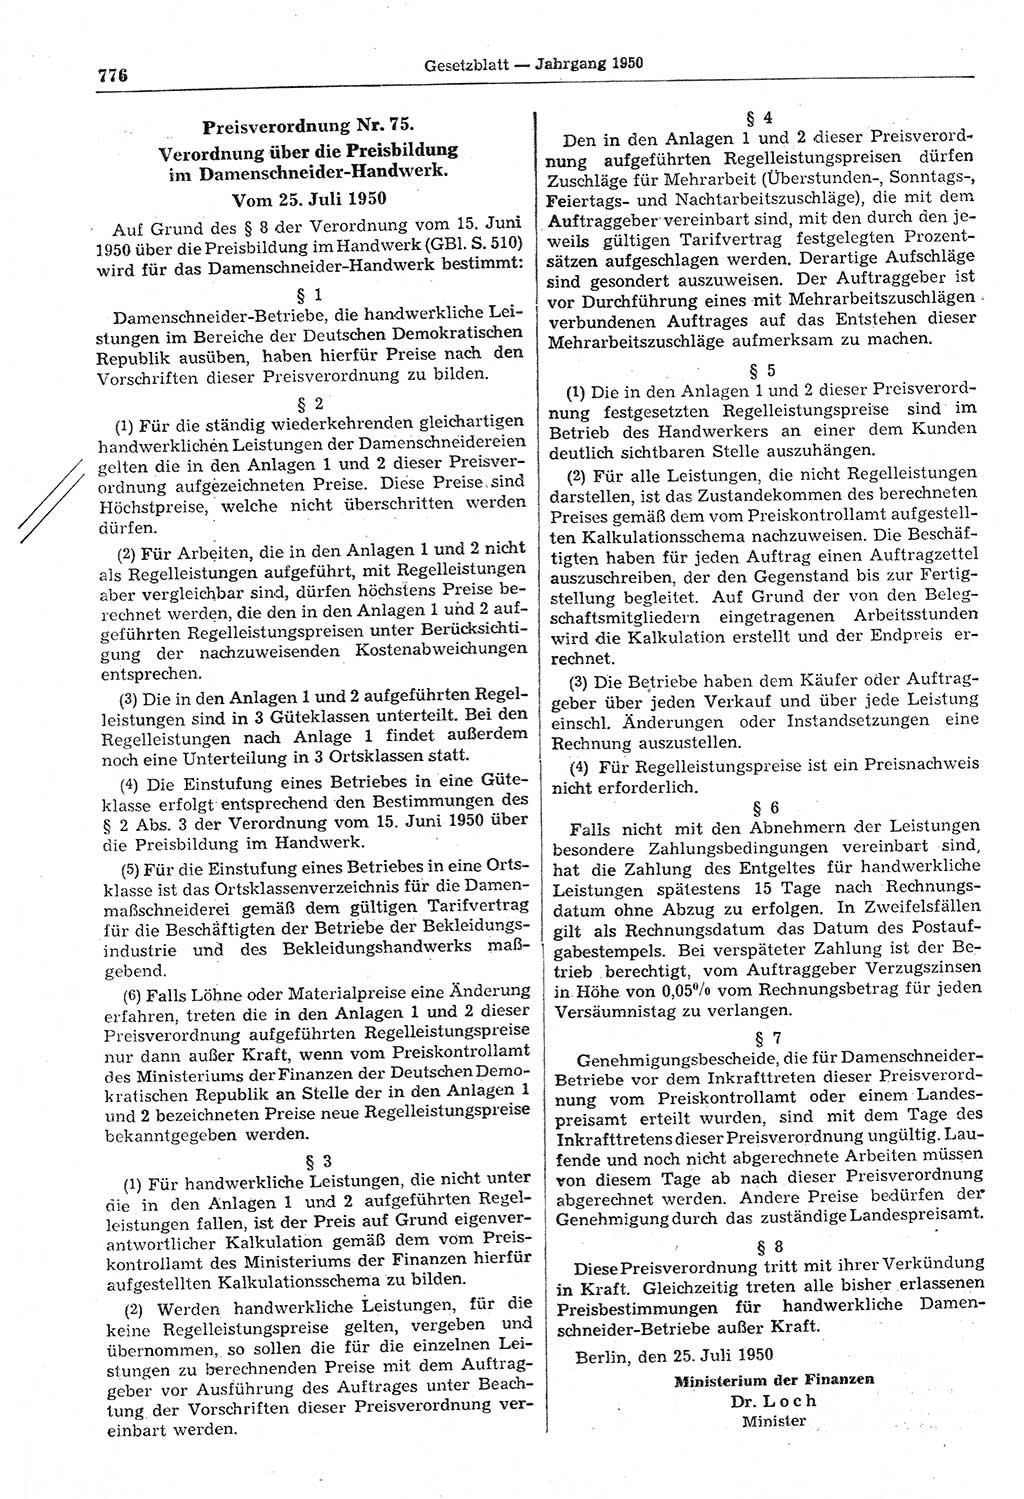 Gesetzblatt (GBl.) der Deutschen Demokratischen Republik (DDR) 1950, Seite 776 (GBl. DDR 1950, S. 776)